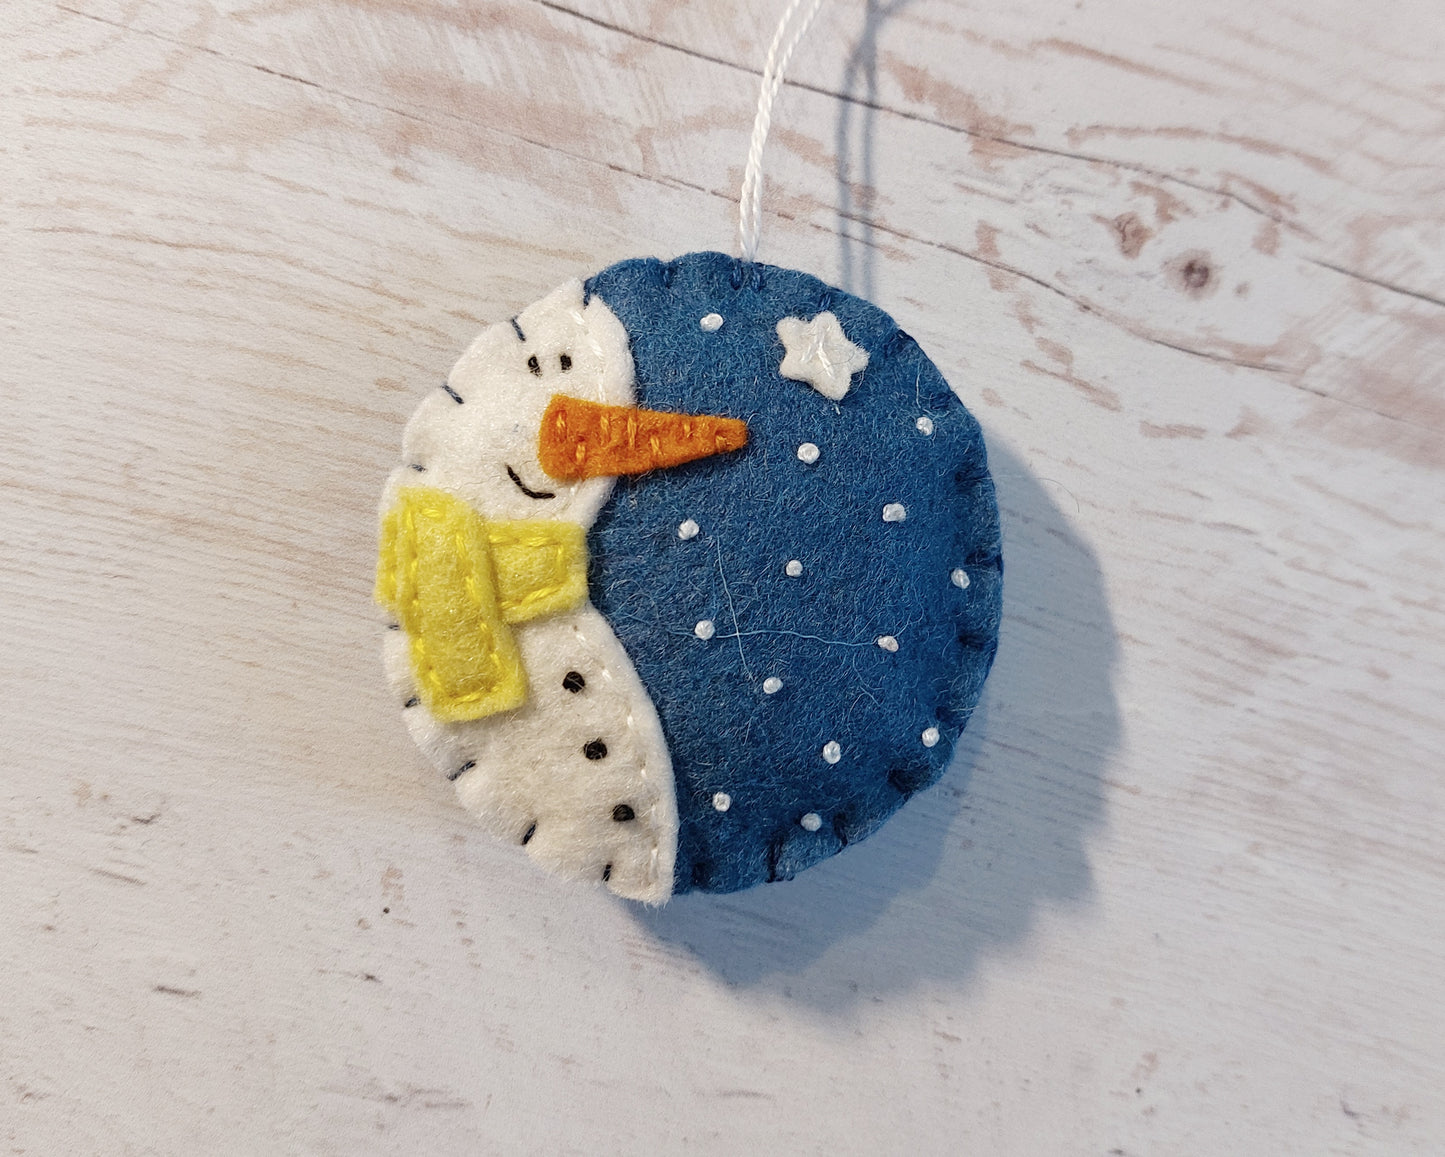 Blue bauble ornament with snowman, felt decoration